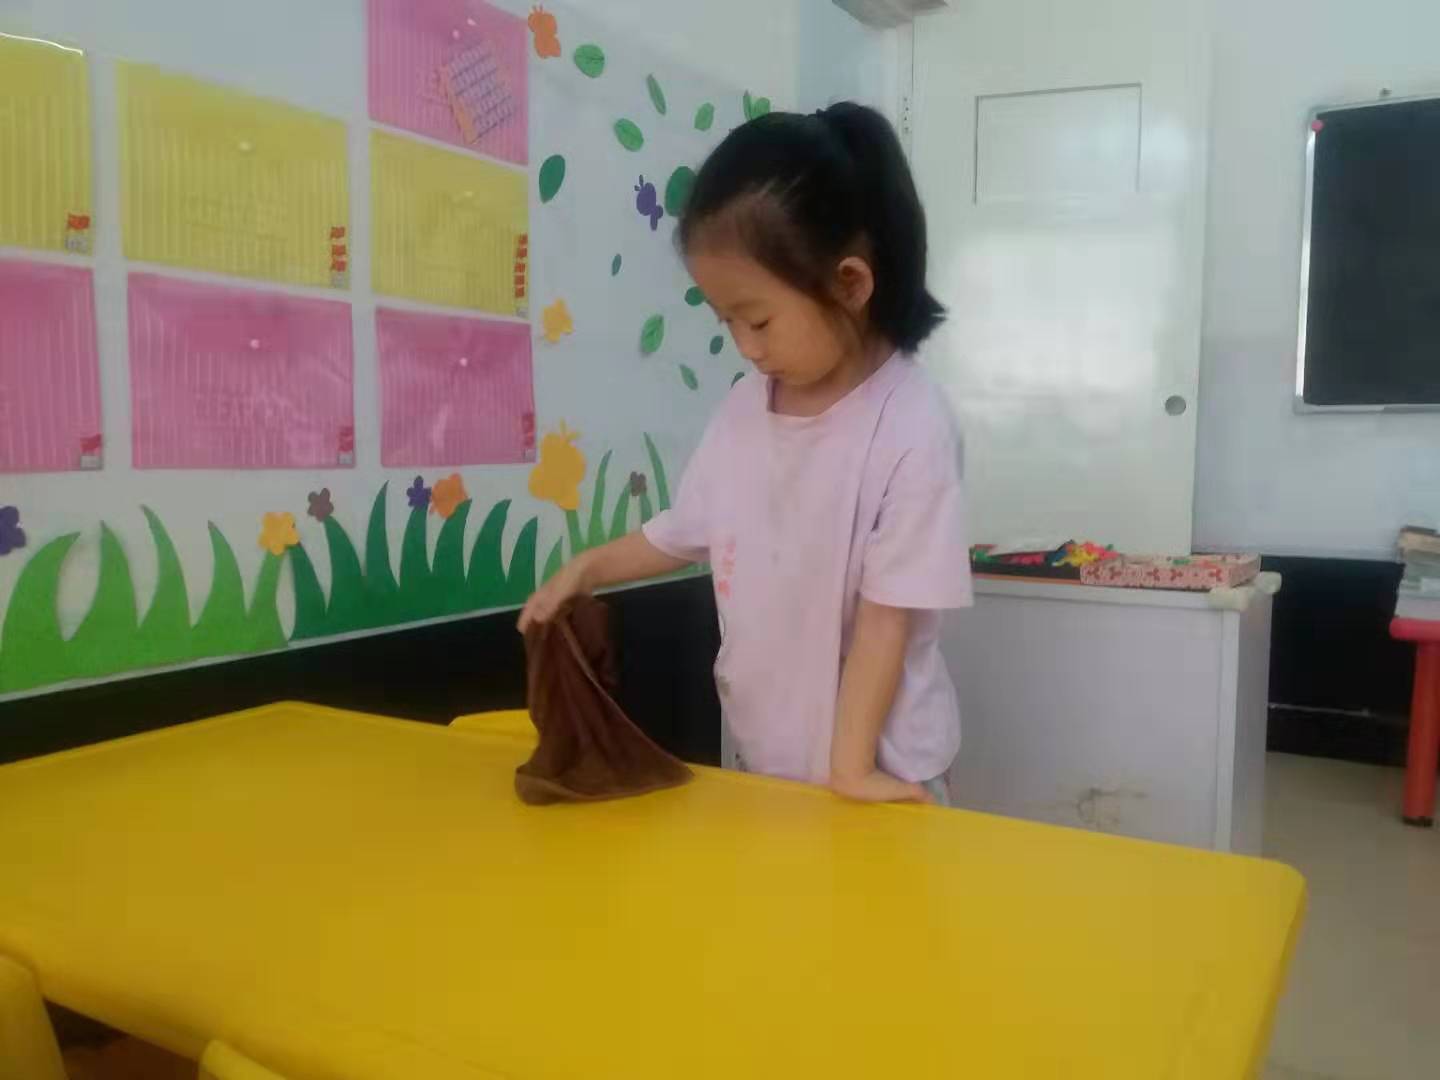 【精彩活动】小小值日生 收获大成长-郑州市实验幼儿园